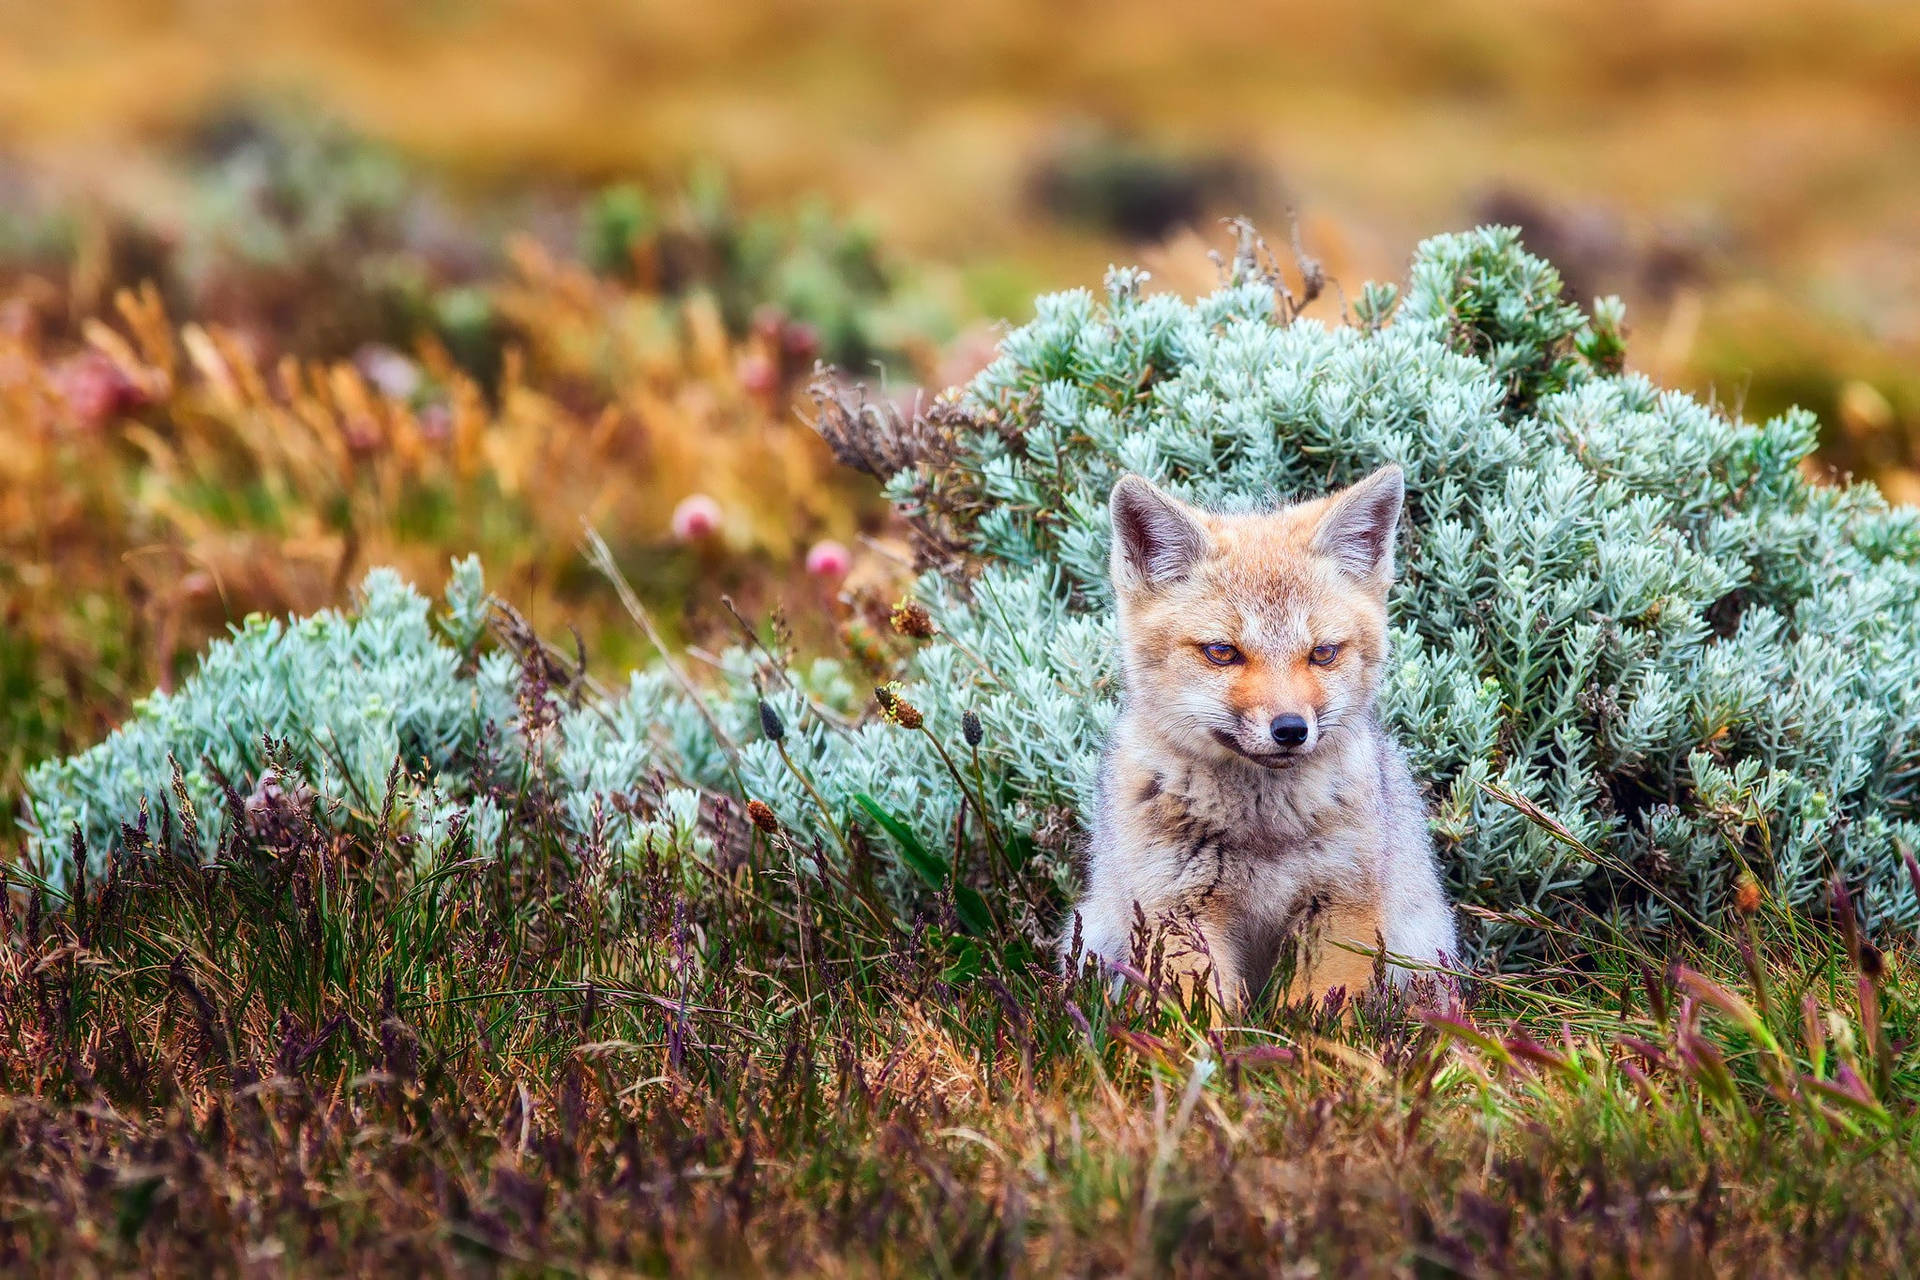 Baby Fox On Grassy Field